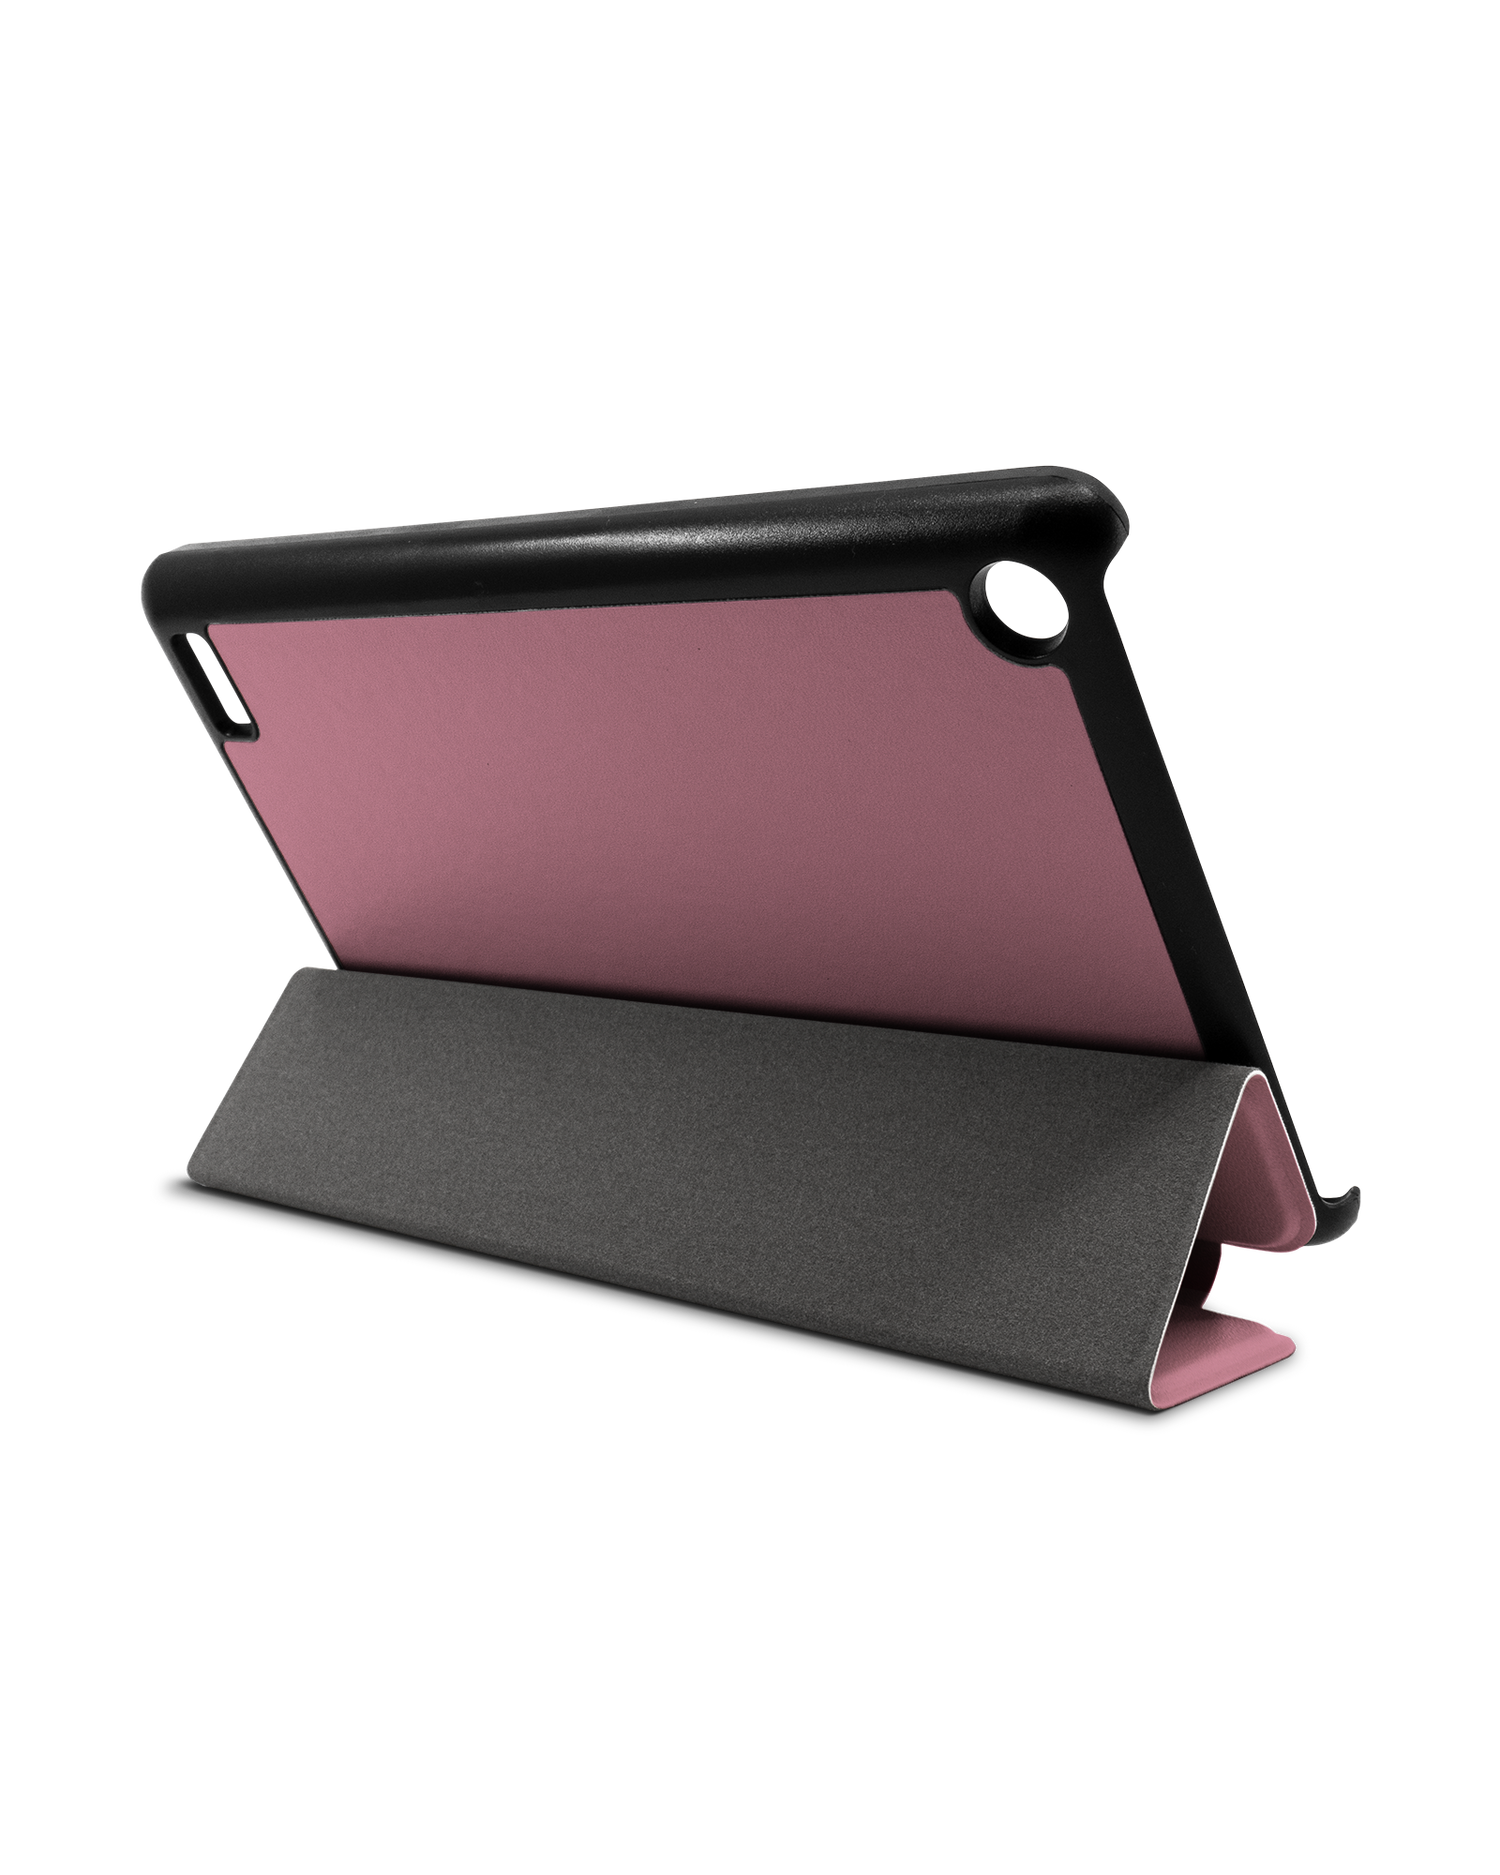 WILD ROSE Tablet Smart Case für Amazon Fire 7: Aufgestellt im Querformat